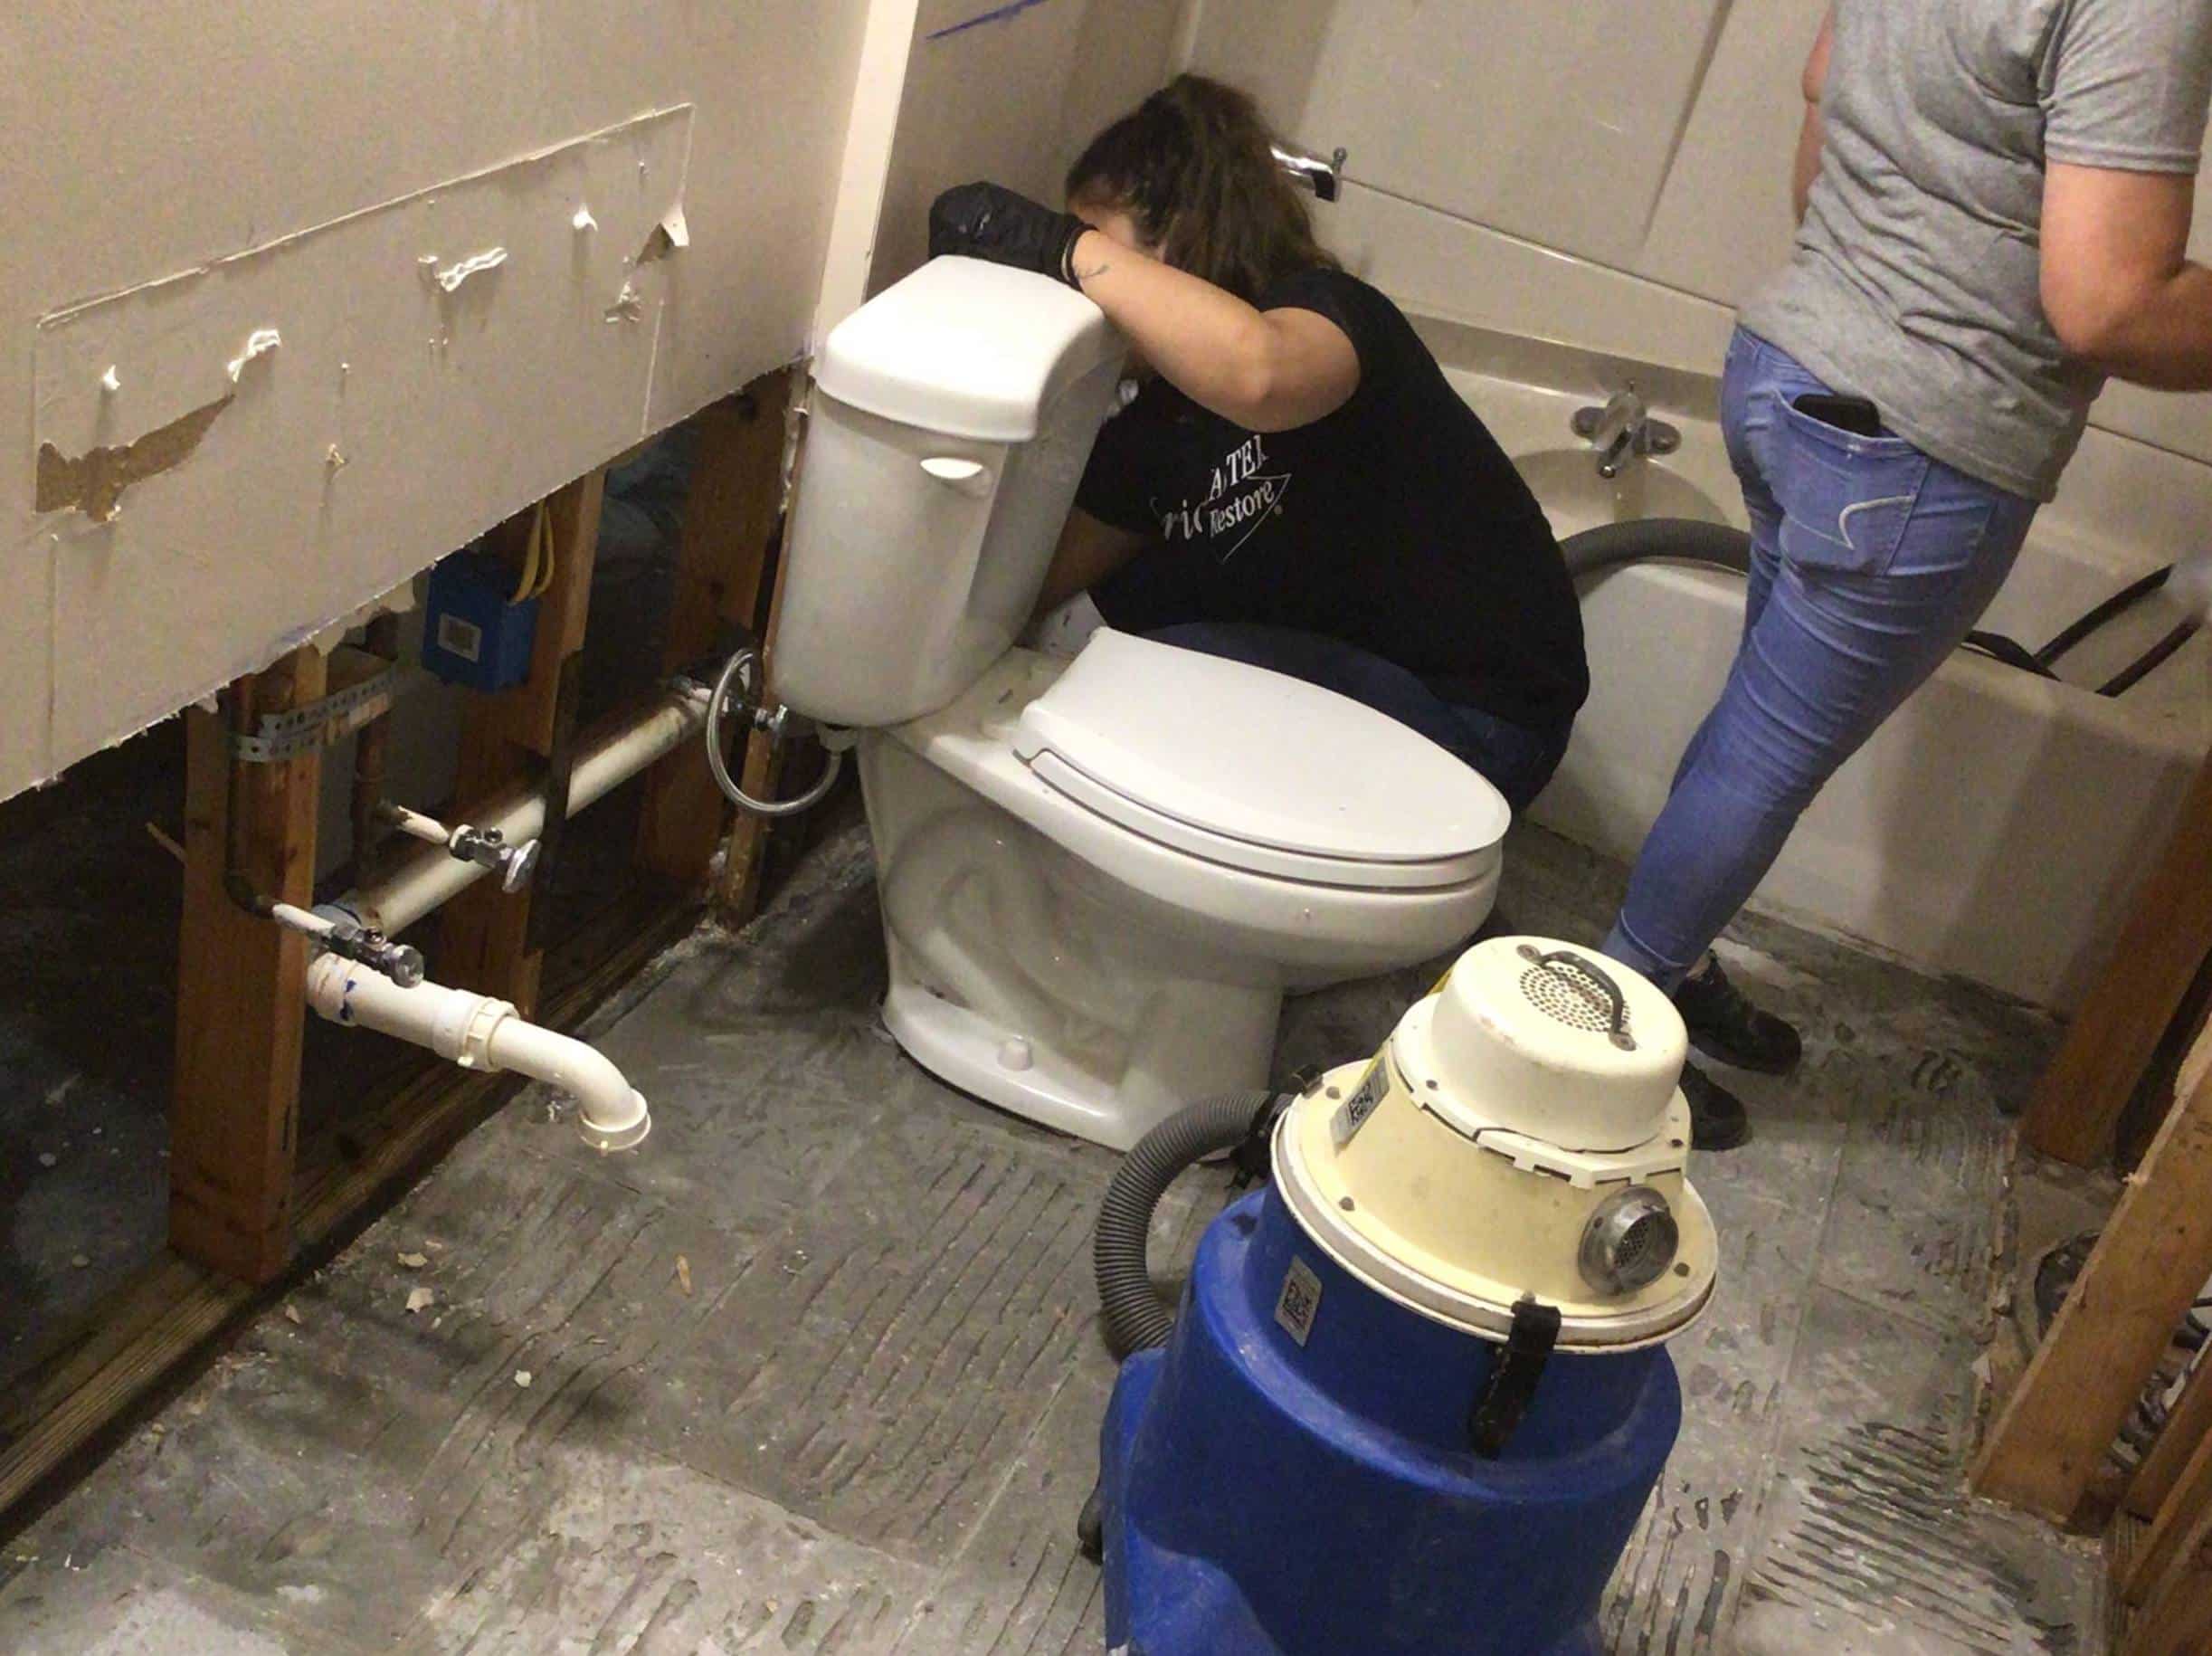 Technicians handling burst pipe in bathroom